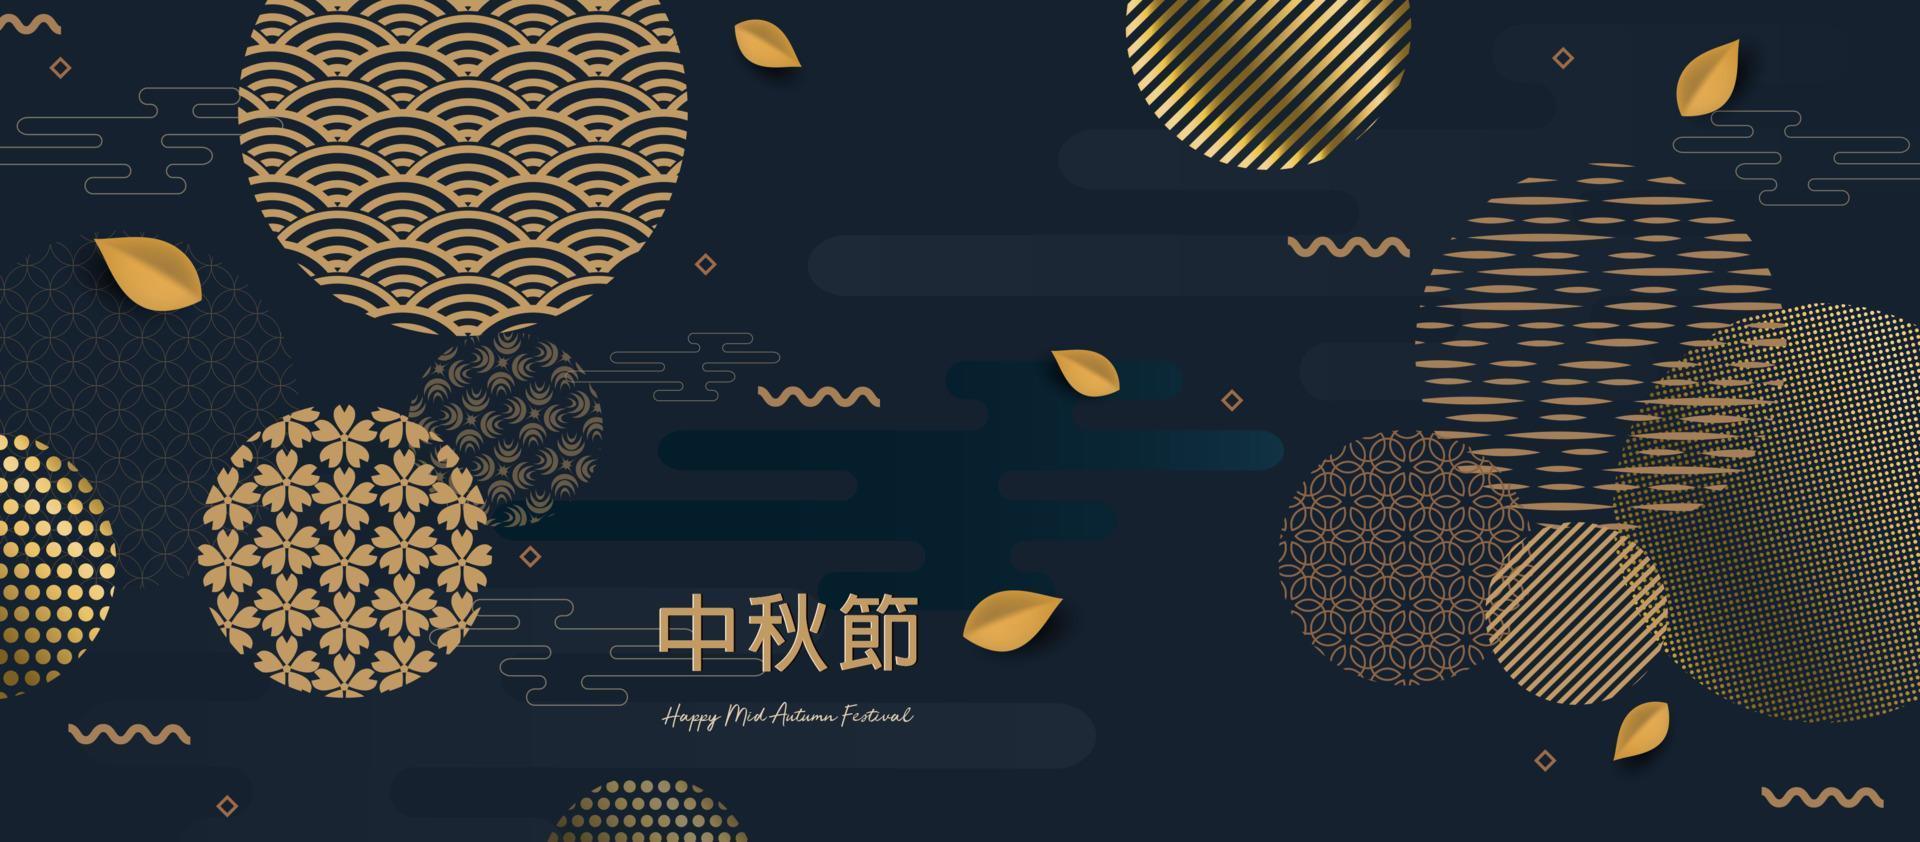 bannerontwerp met traditionele Chinese cirkelspatronen die de volle maan vertegenwoordigen, Chinese tekst gelukkig medio herfst, goud op donkerblauw. vector vlakke stijl. plaats voor uw tekst.